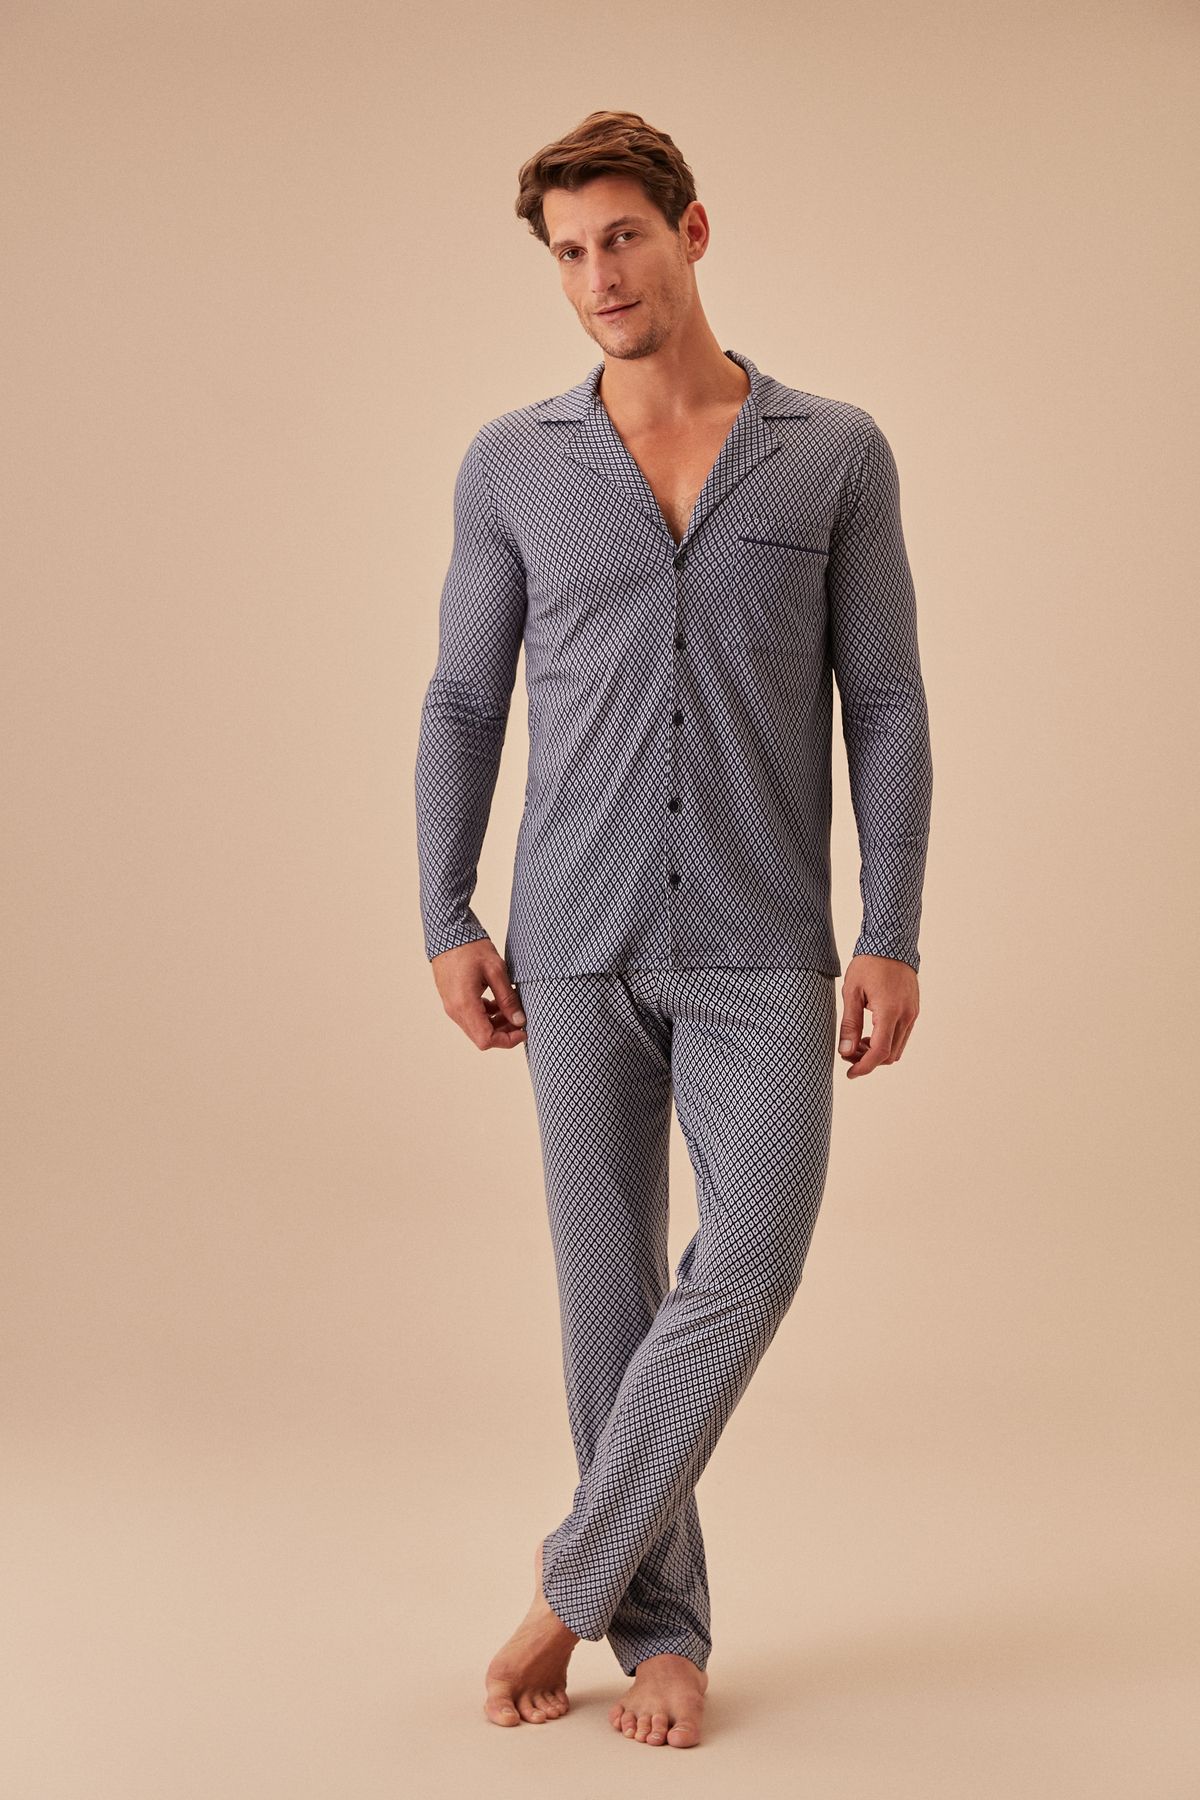 Suwen Private Erkek Maskülen Pijama Takımı